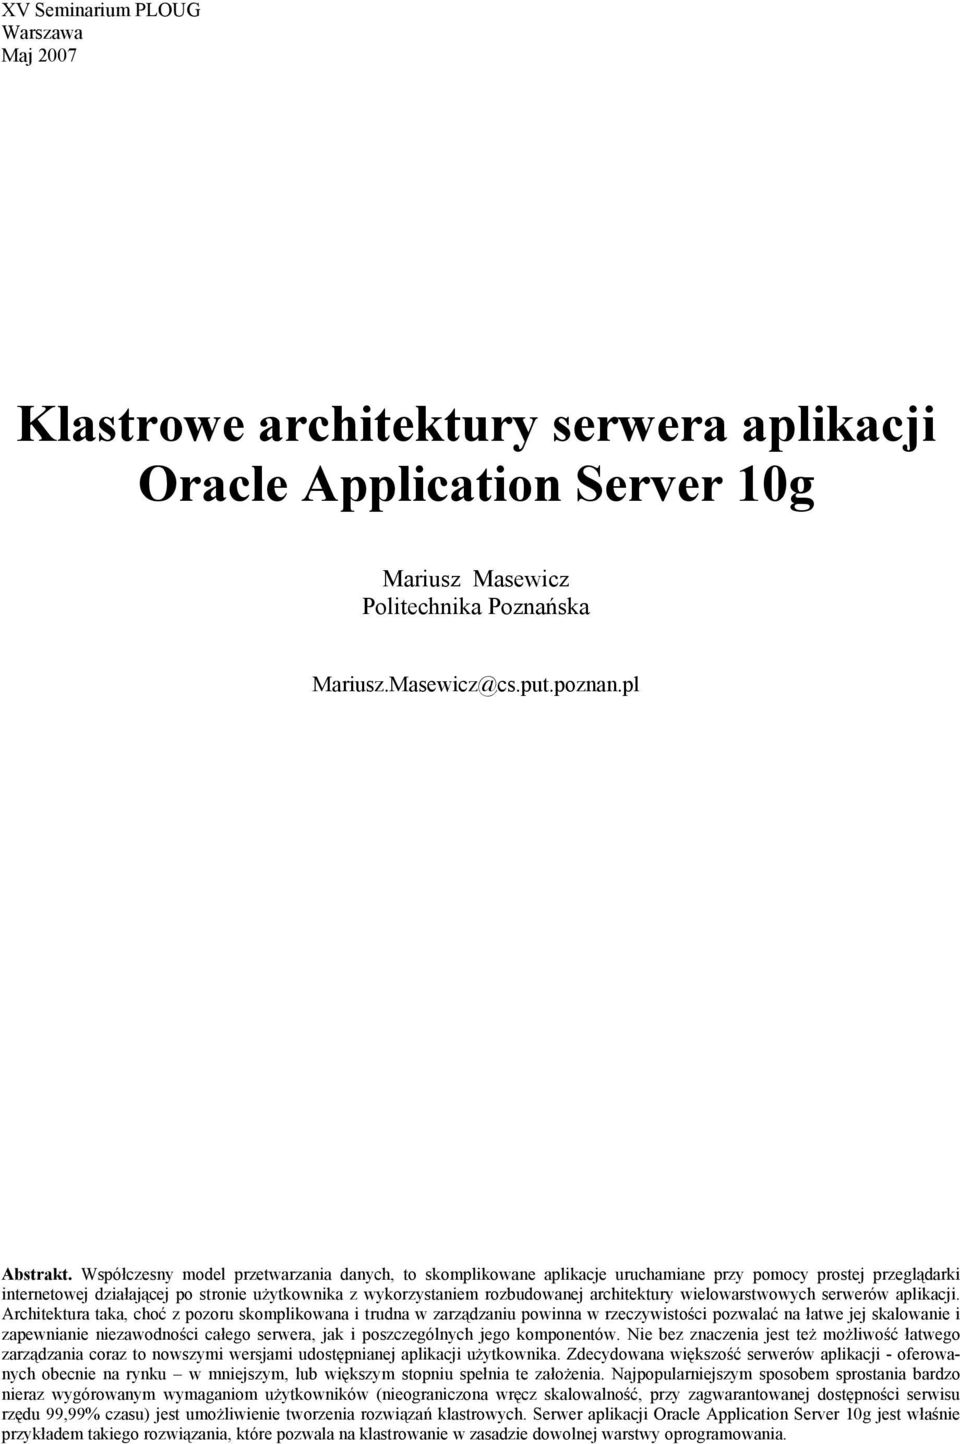 architektury wielowarstwowych serwerów aplikacji.